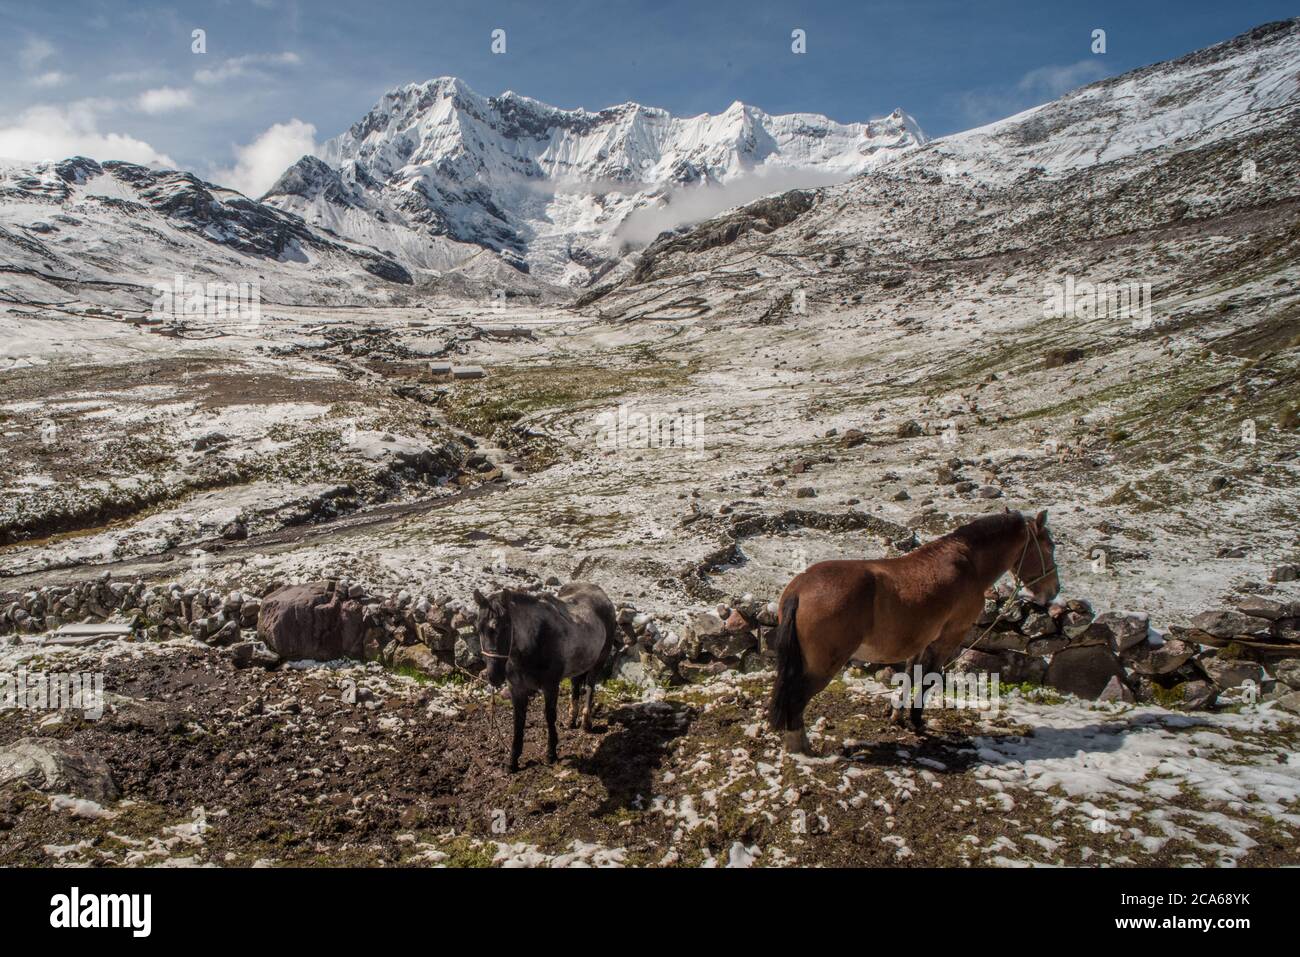 Ein Schneesturm gefegt und Morgen kommt mit der Andenlandschaft der Cordillera Vilcanota bedeckt mit Schnee. 2 Pferde stehen draußen. Stockfoto